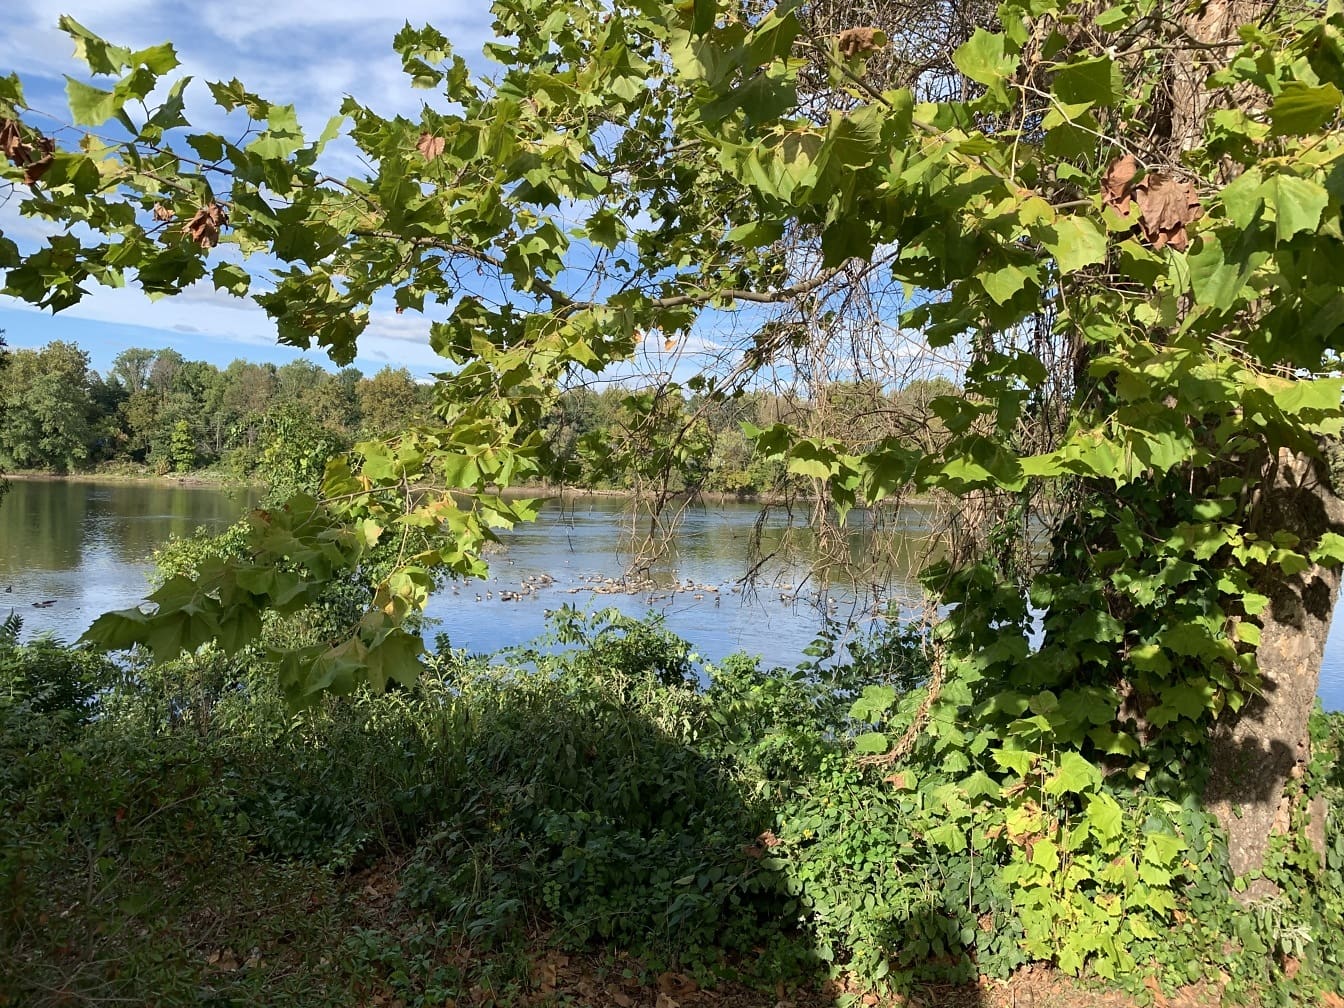 Sikt över Delawarefloden från flodbanken i Langhorne, Pennsylvania med träd i förgrunden som ramar in bilden